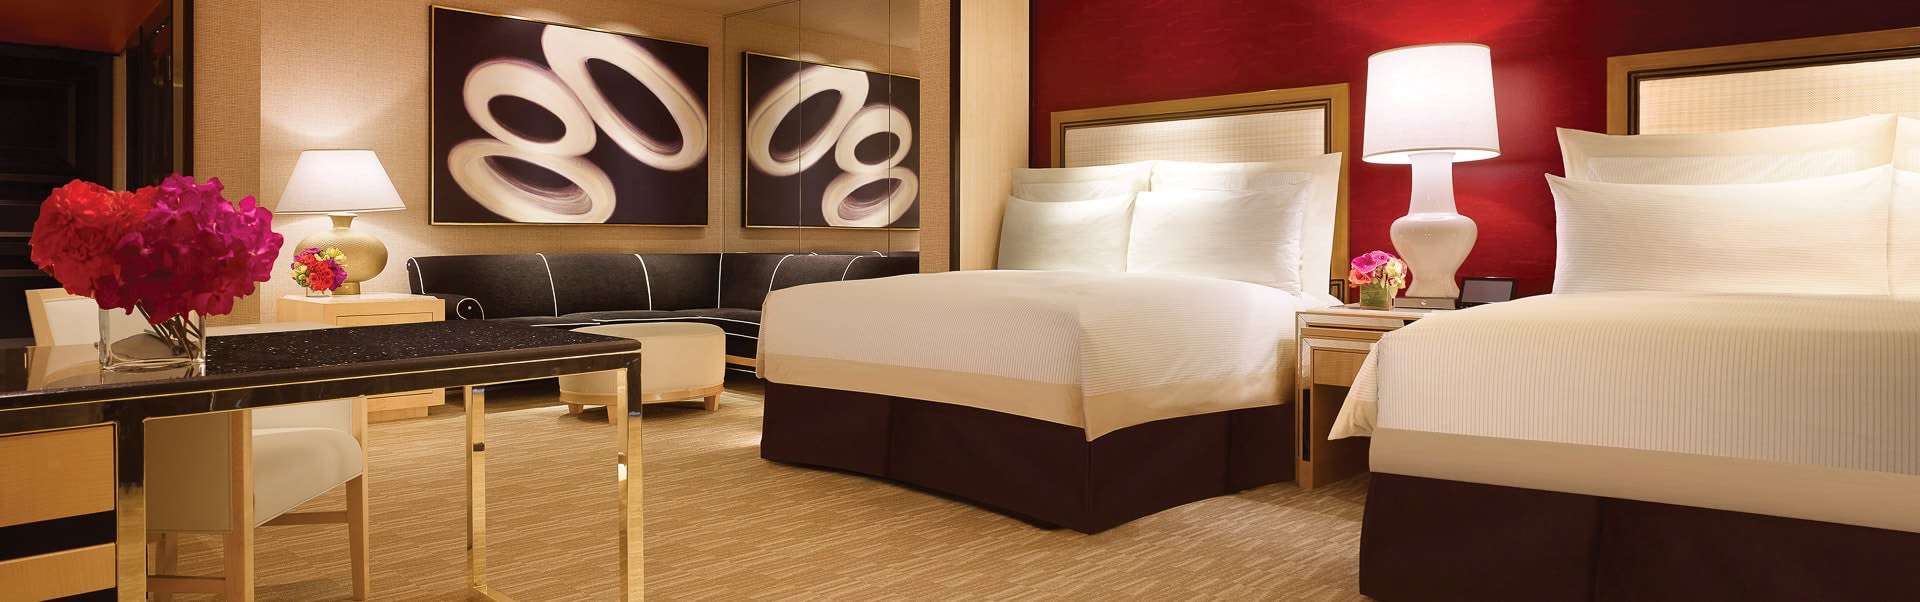 Premium Two Queen Suite, Las Vegas Suites